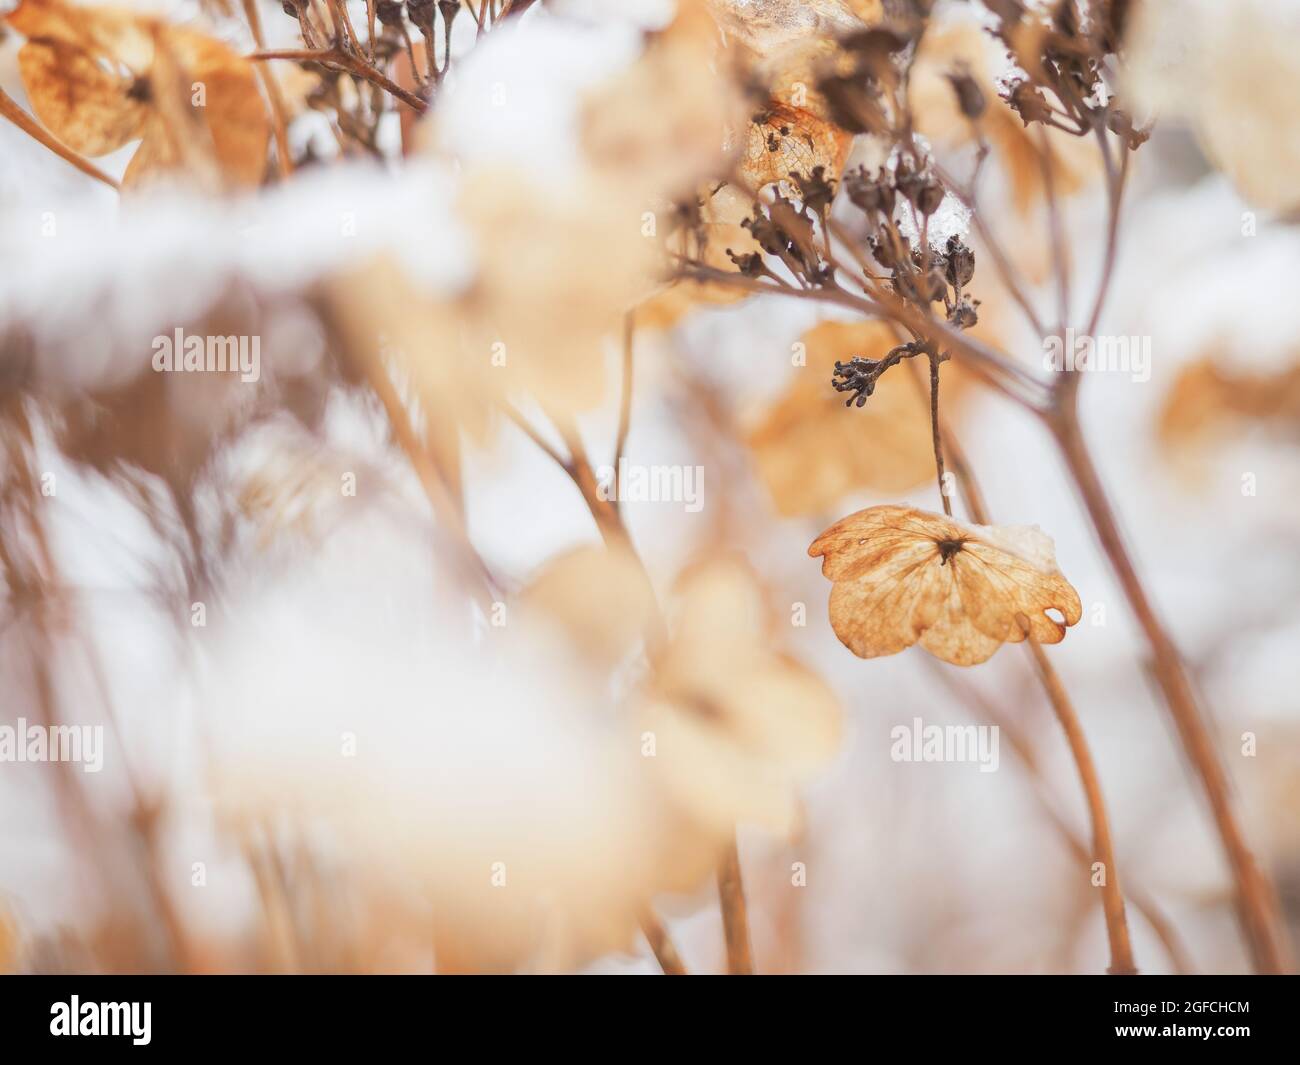 Trockene Hortensien (Hortensien) Blumen und Zweige bedeckt mit Schnee in der frühen Wintersaison. Malerische Winterlandschaft in ruhigen Lichttönen. Stockfoto